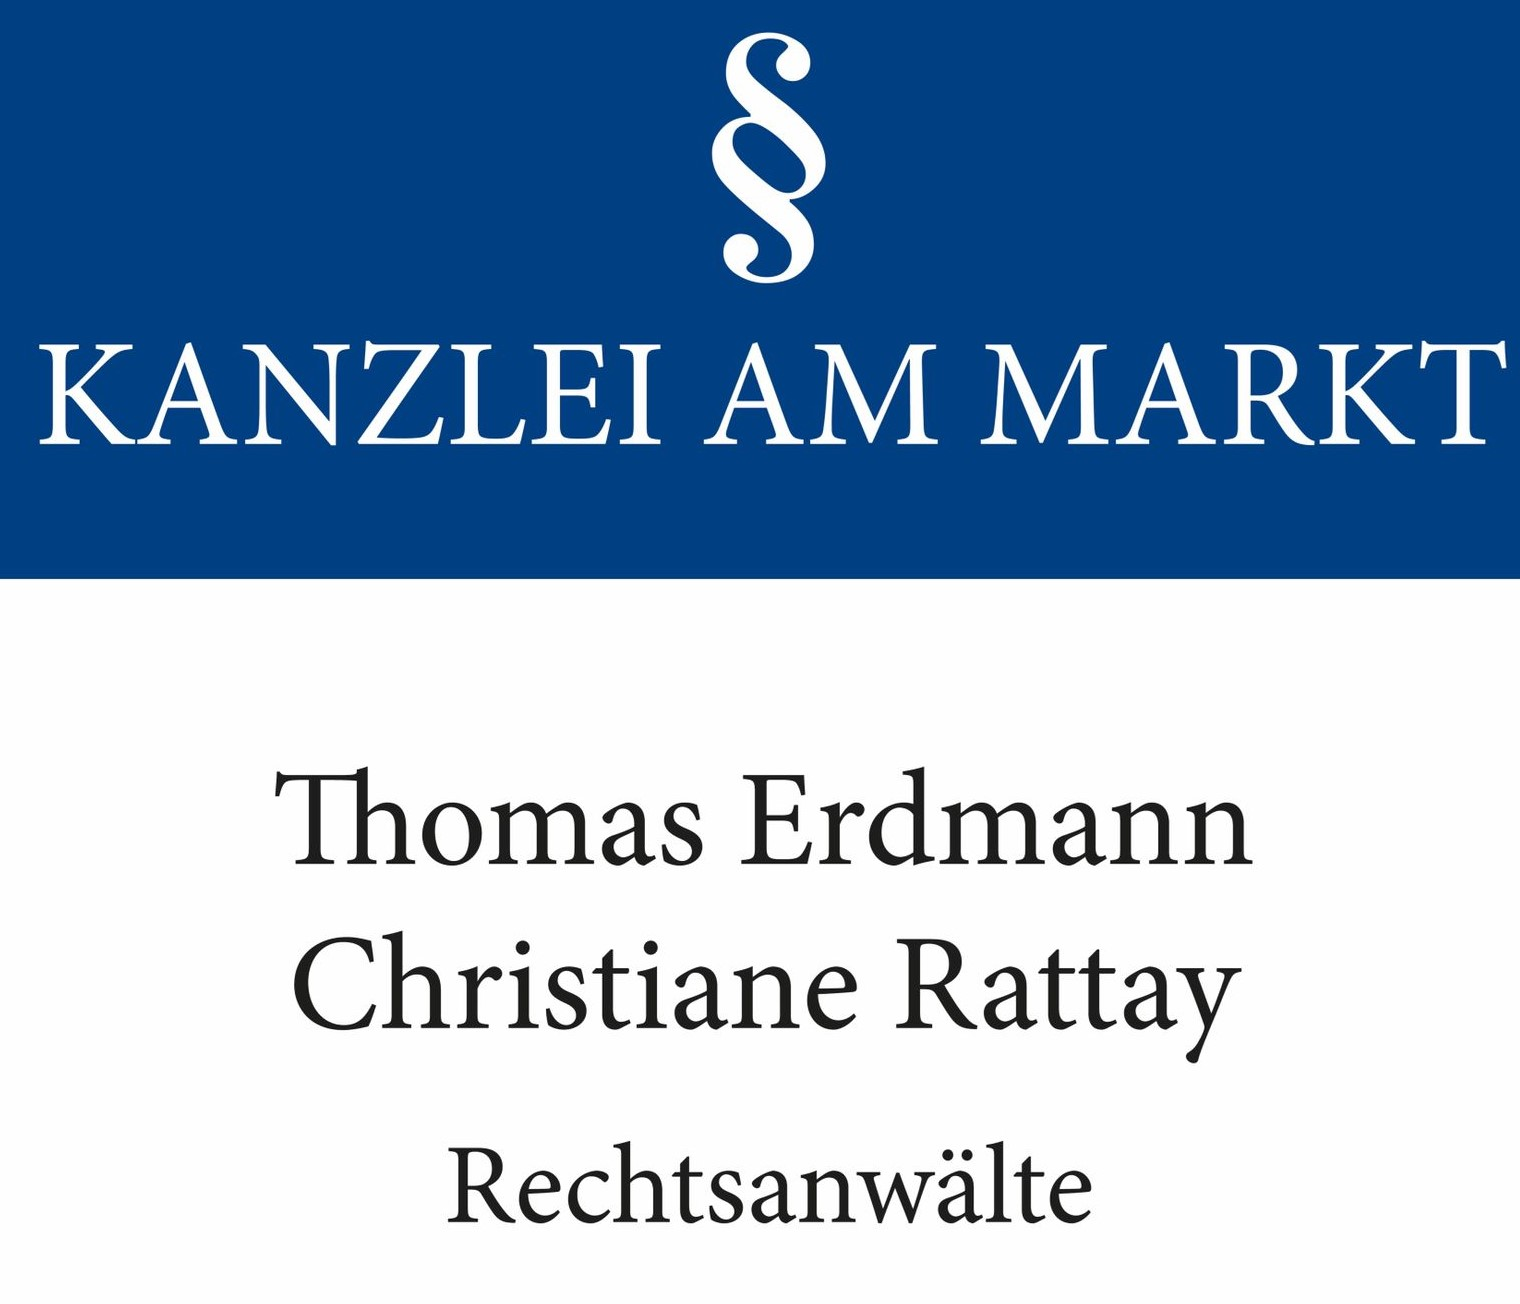 Kanzlei am Markt Rechtsanwälte Erdmann & Rattay 